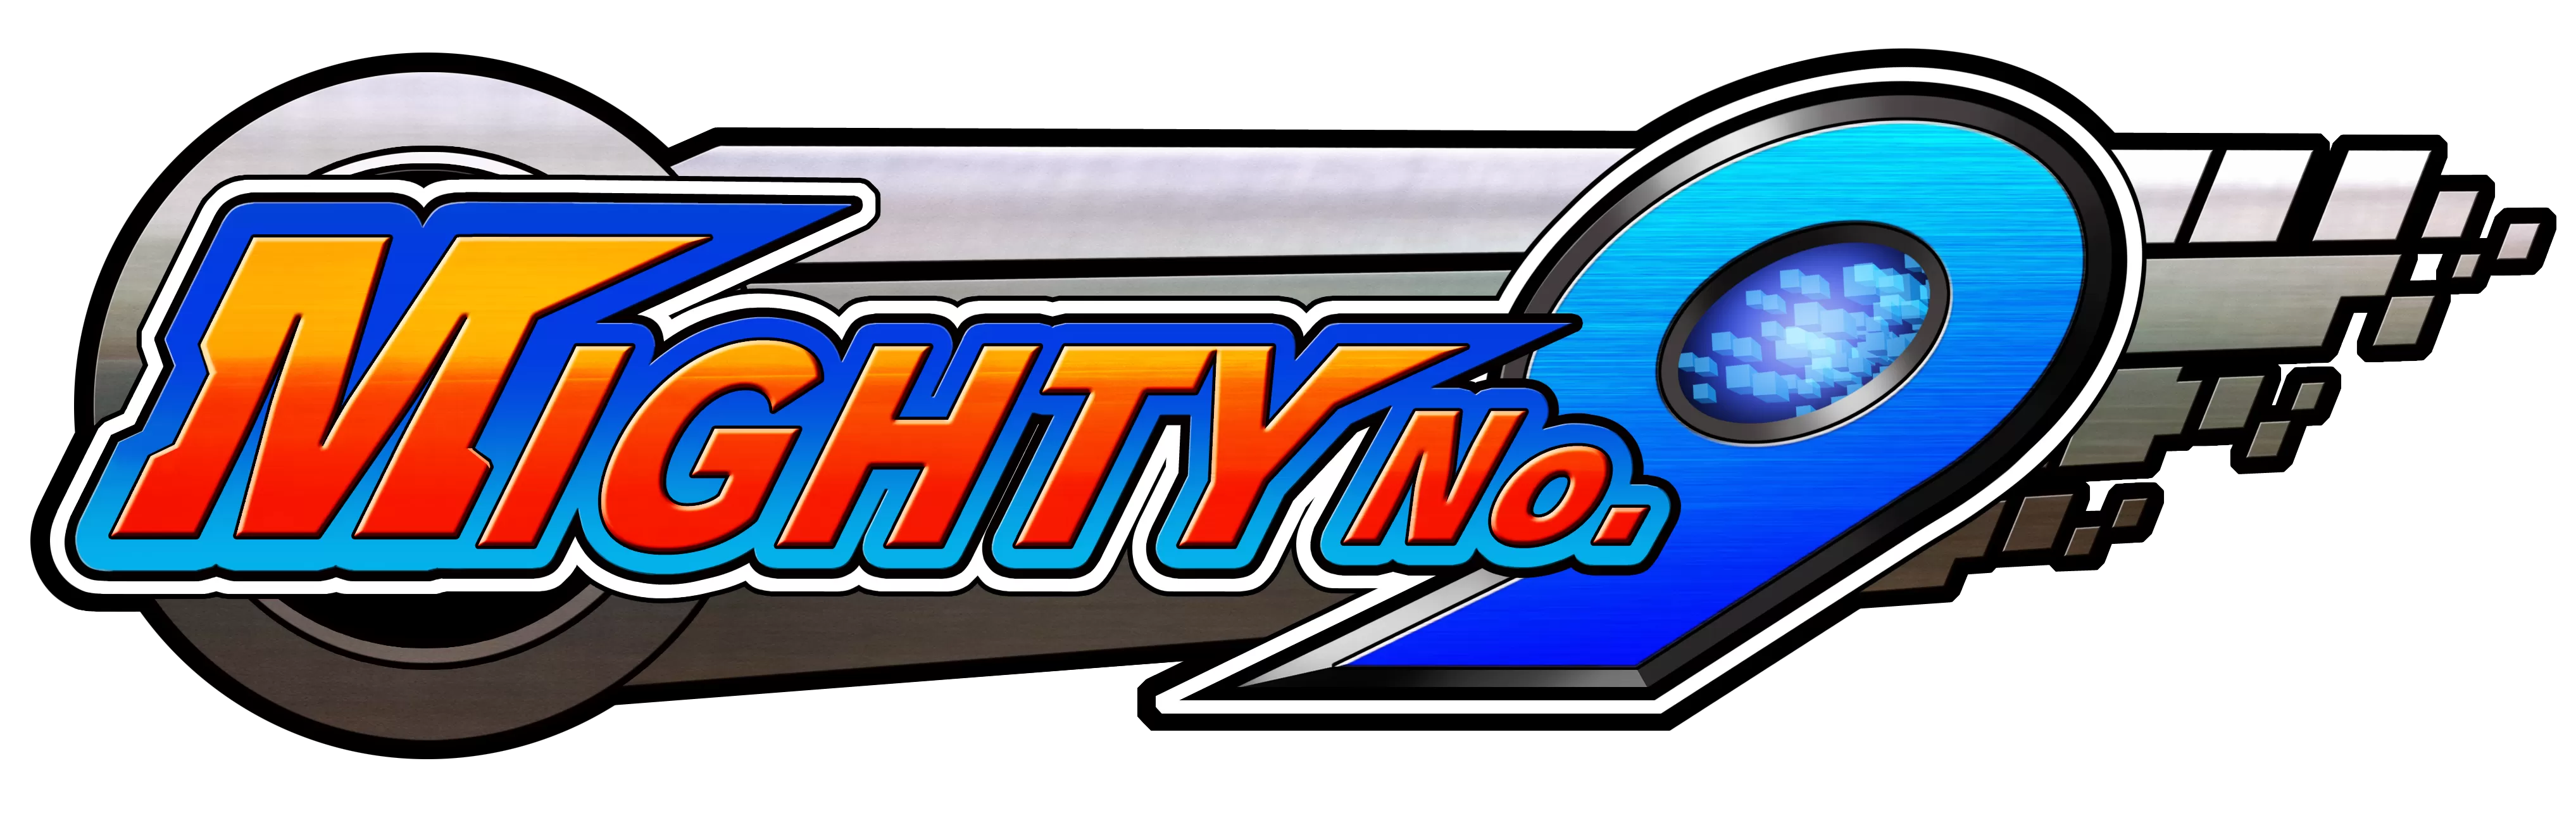 Mighty no.9_logo_brush up1015